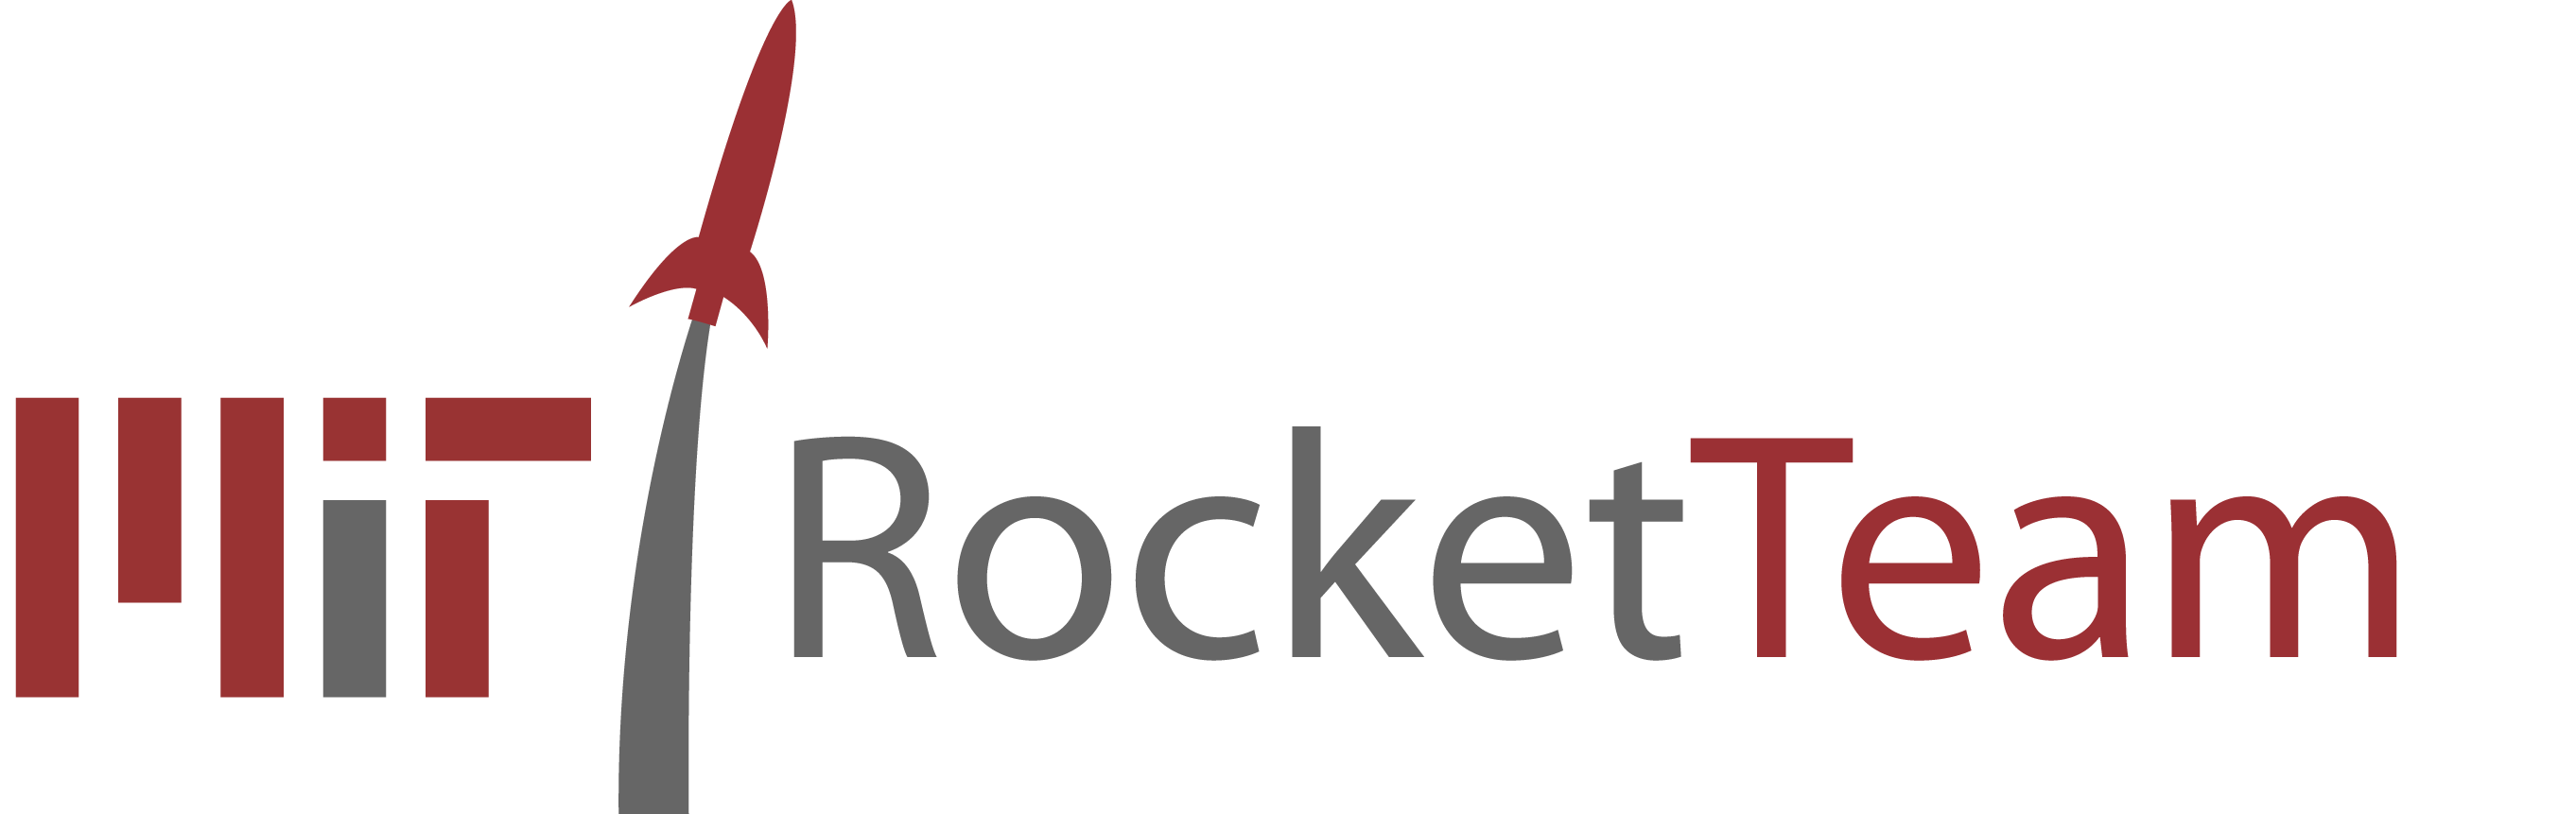 Image result for MIT Rocket Team wiki